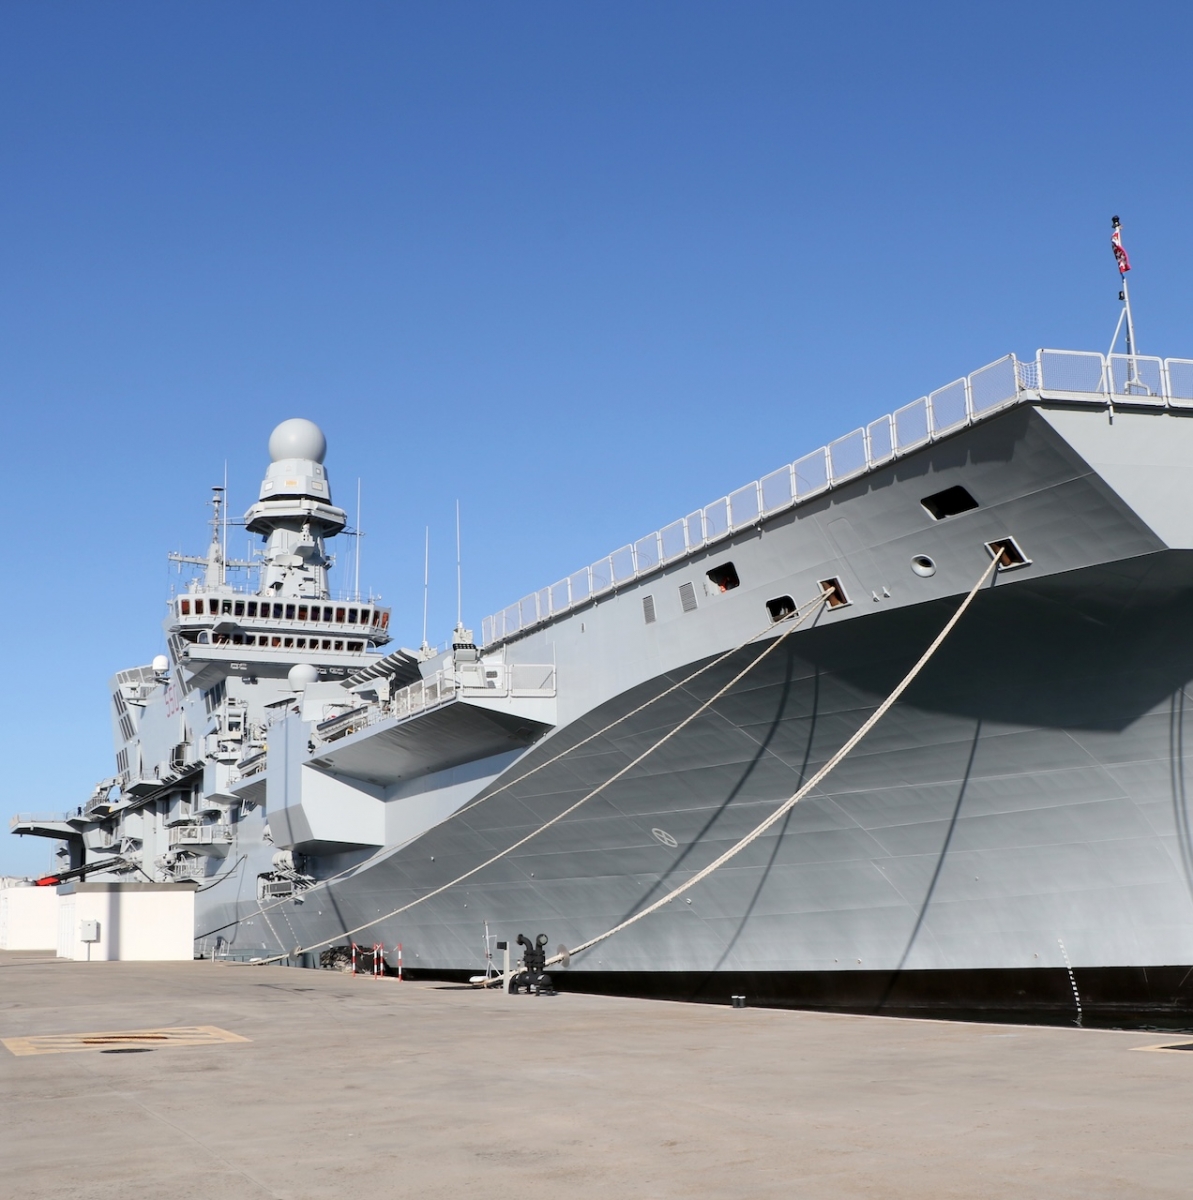 La nave portaerei Cavour ormeggiata presso la base navale militare